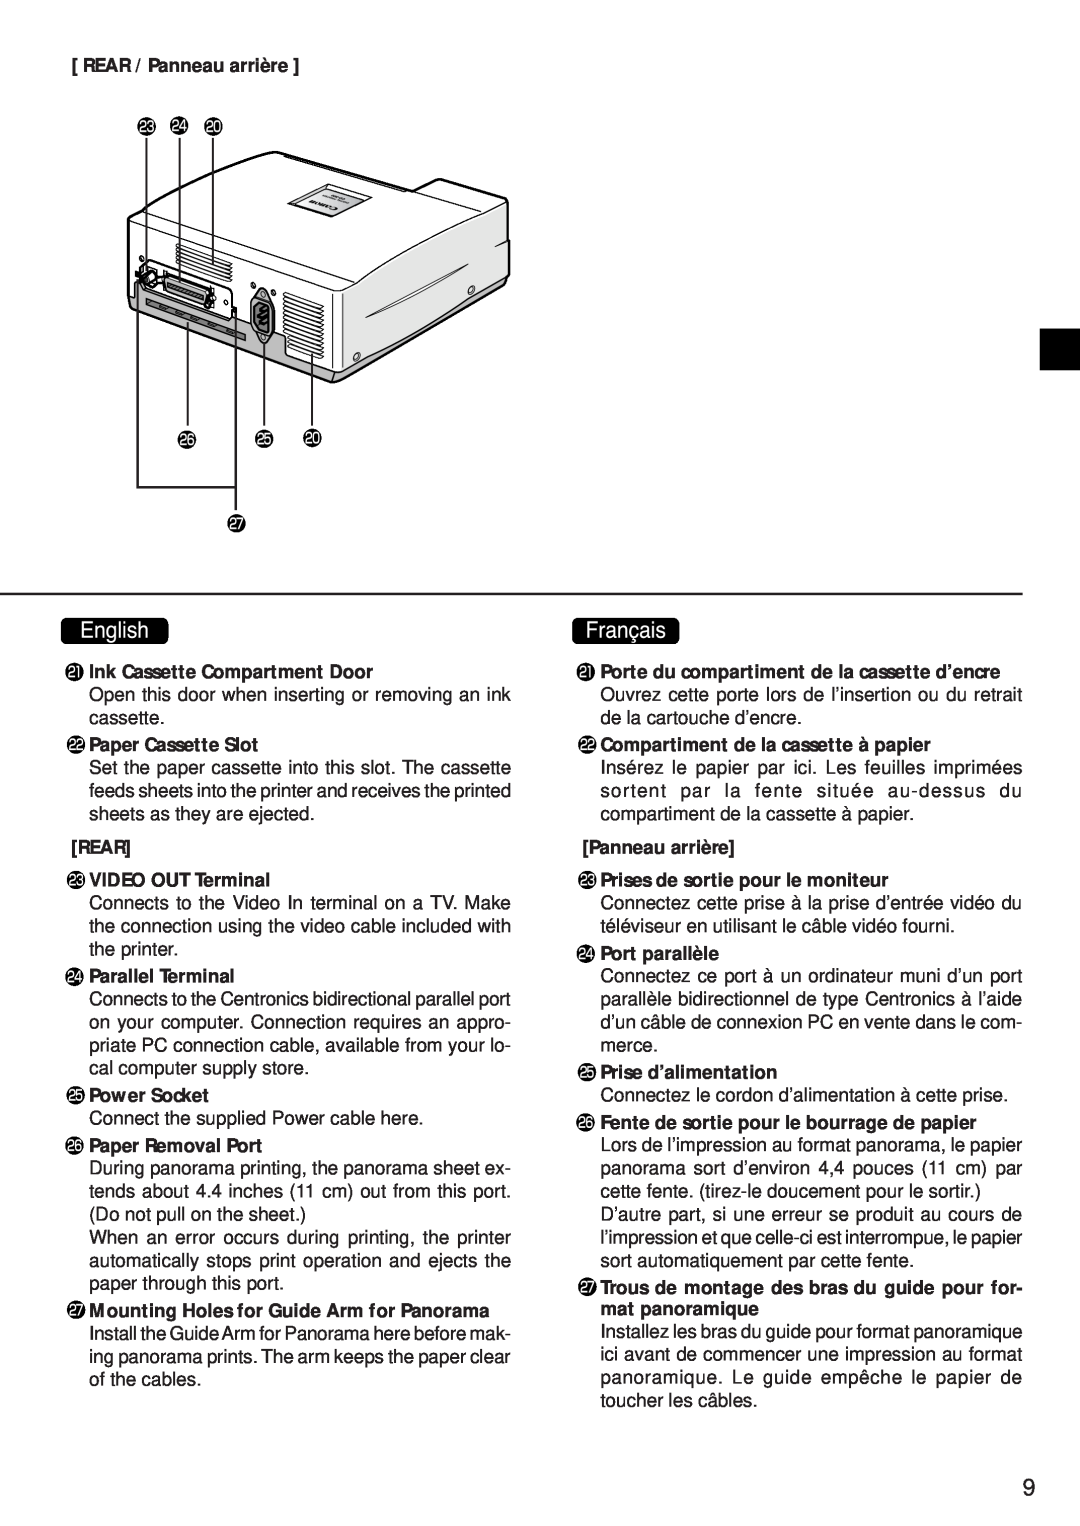 Canon CD-300 manual REAR / Panneau arrière, Ink Cassette Compartment Door, Paper Cassette Slot, REAR VIDEO OUT Terminal 